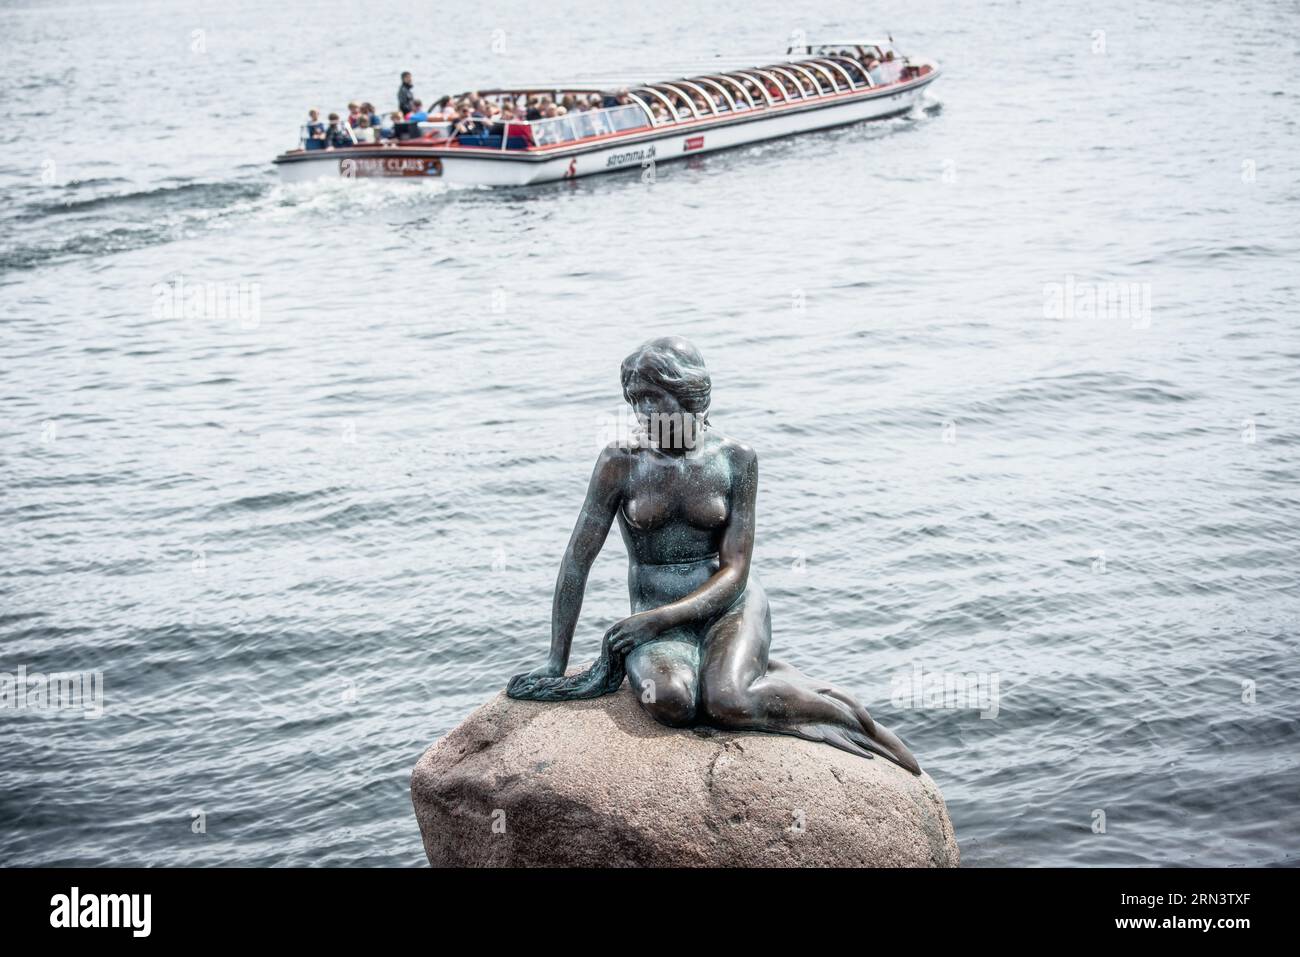 KOPENHAGEN, Dänemark – die ikonische Statue der kleinen Meerjungfrau auf einem Felsen am Ufer der Langelinie Promenade. Die 1909 in Auftrag gegebene und 1913 enthüllte Bronzestatue ist zu einem Emblem Kopenhagens geworden und wurde von Hans Christian Andersens gleichnamigem Märchen inspiriert. Stockfoto